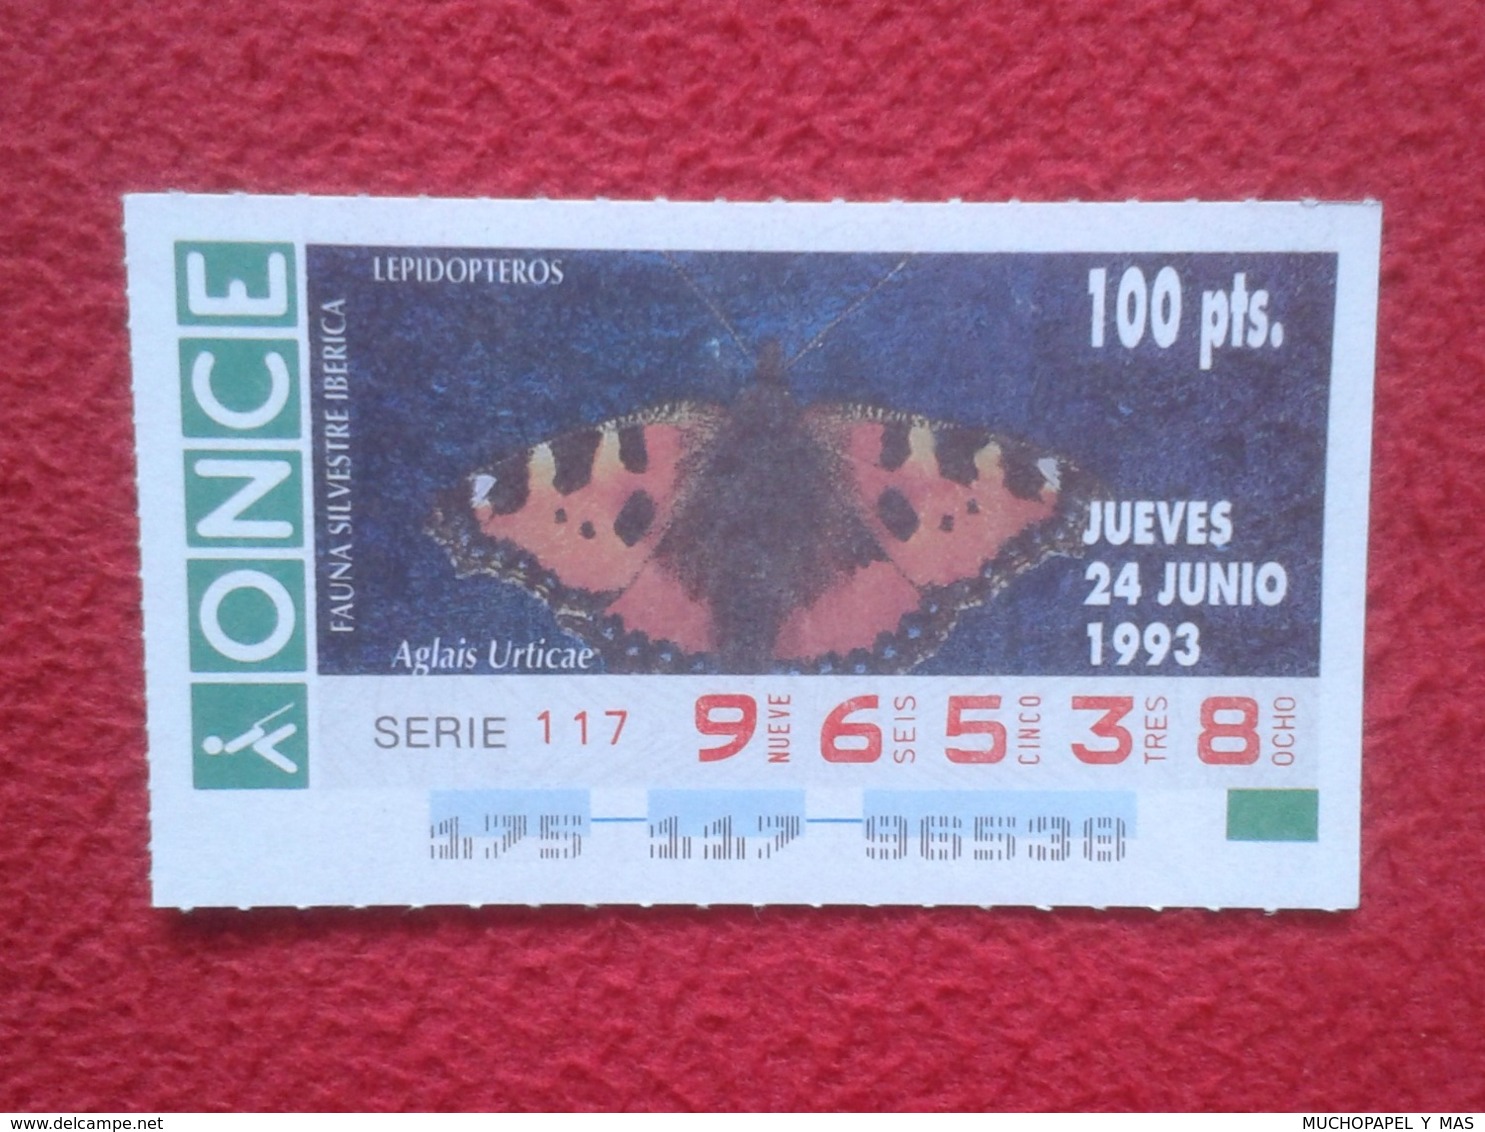 CUPÓN DE ONCE 1993 LOTTERY LOTERIE SPAIN LOTERÍA FAUNA FAUNE IBÉRICA MARIPOSA BUTTERFLY PAPILLON LEPIDÓPTEROS VER FOTO.. - Billetes De Lotería